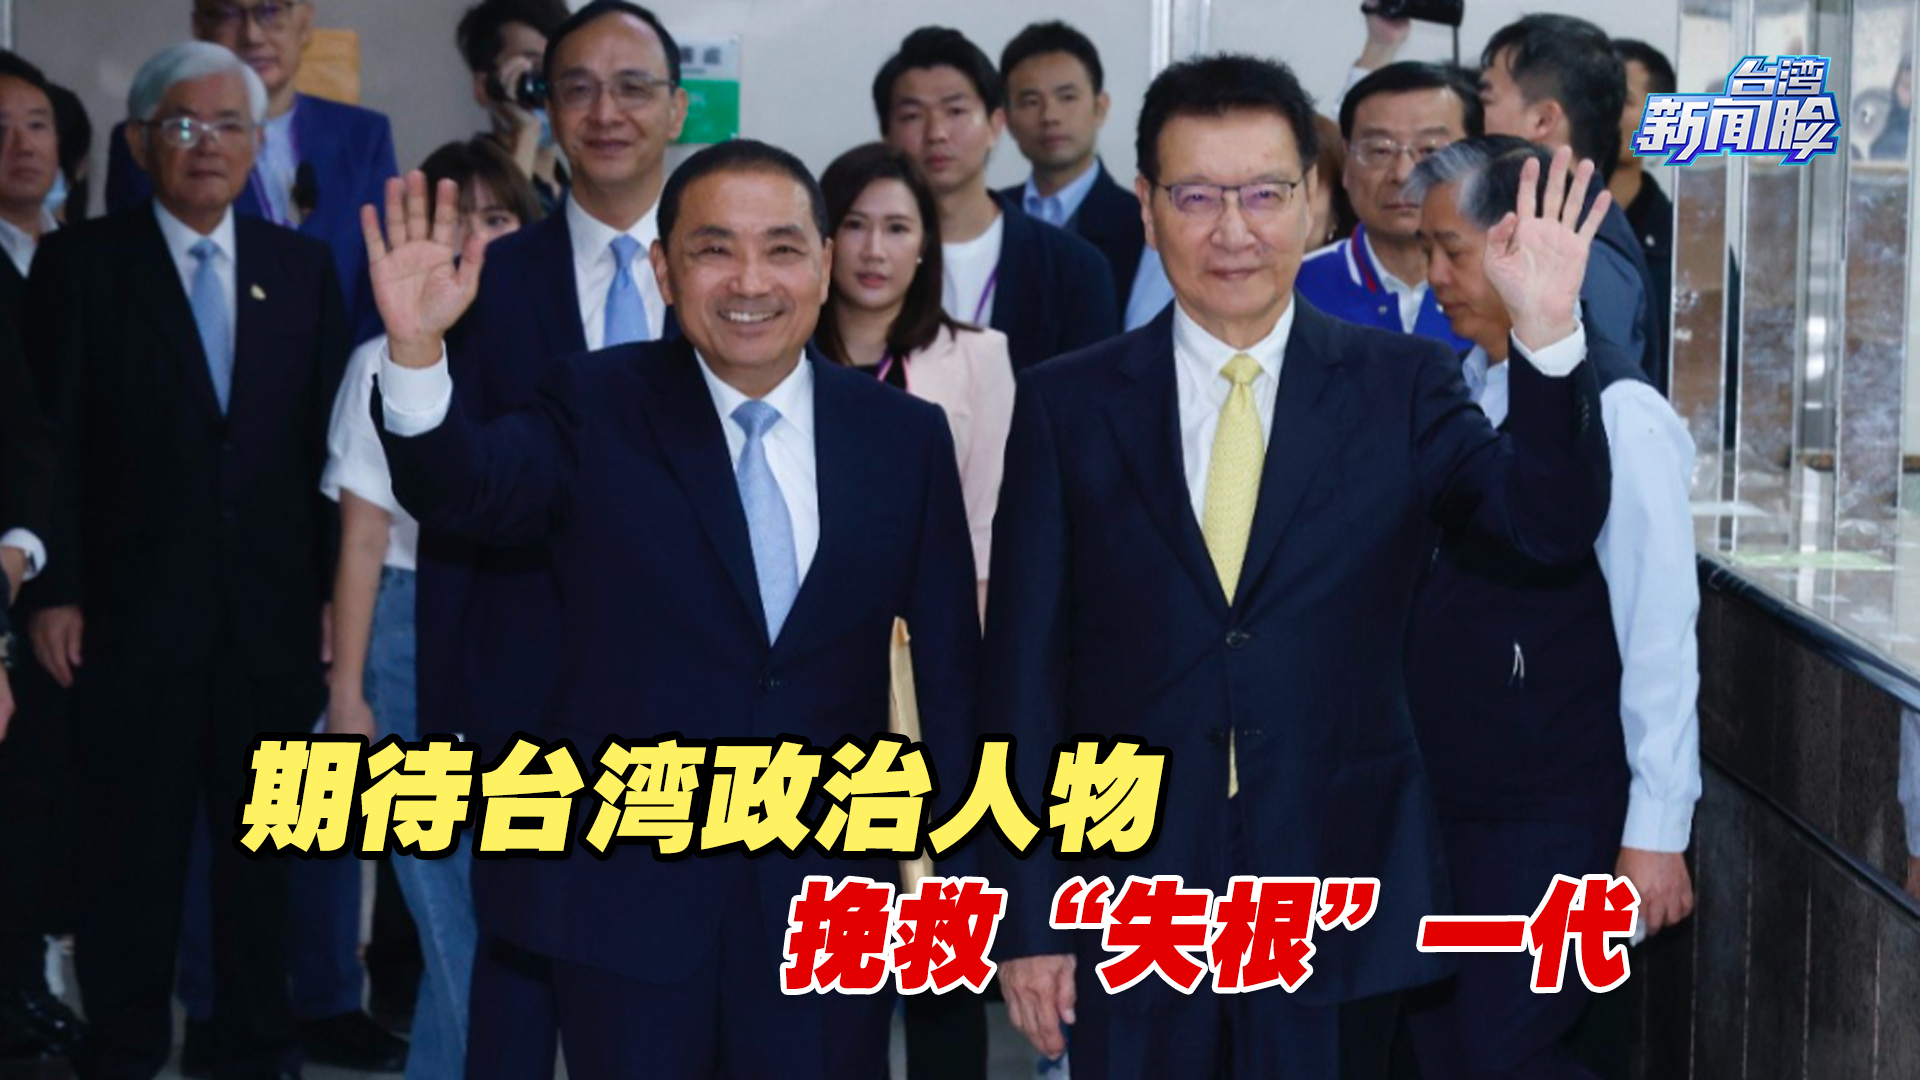 期待台湾政治人物能拨乱反正，挽救“失根”一代